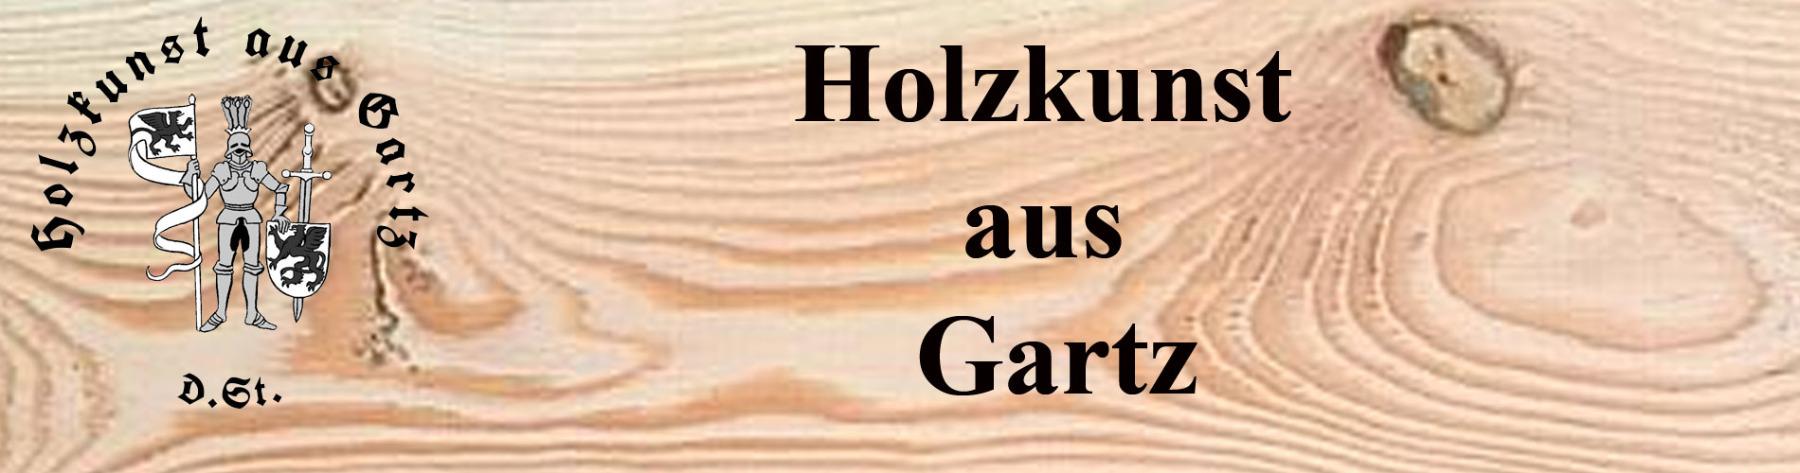 Holzkunst_Gartz_Hintergrundbild_Shop